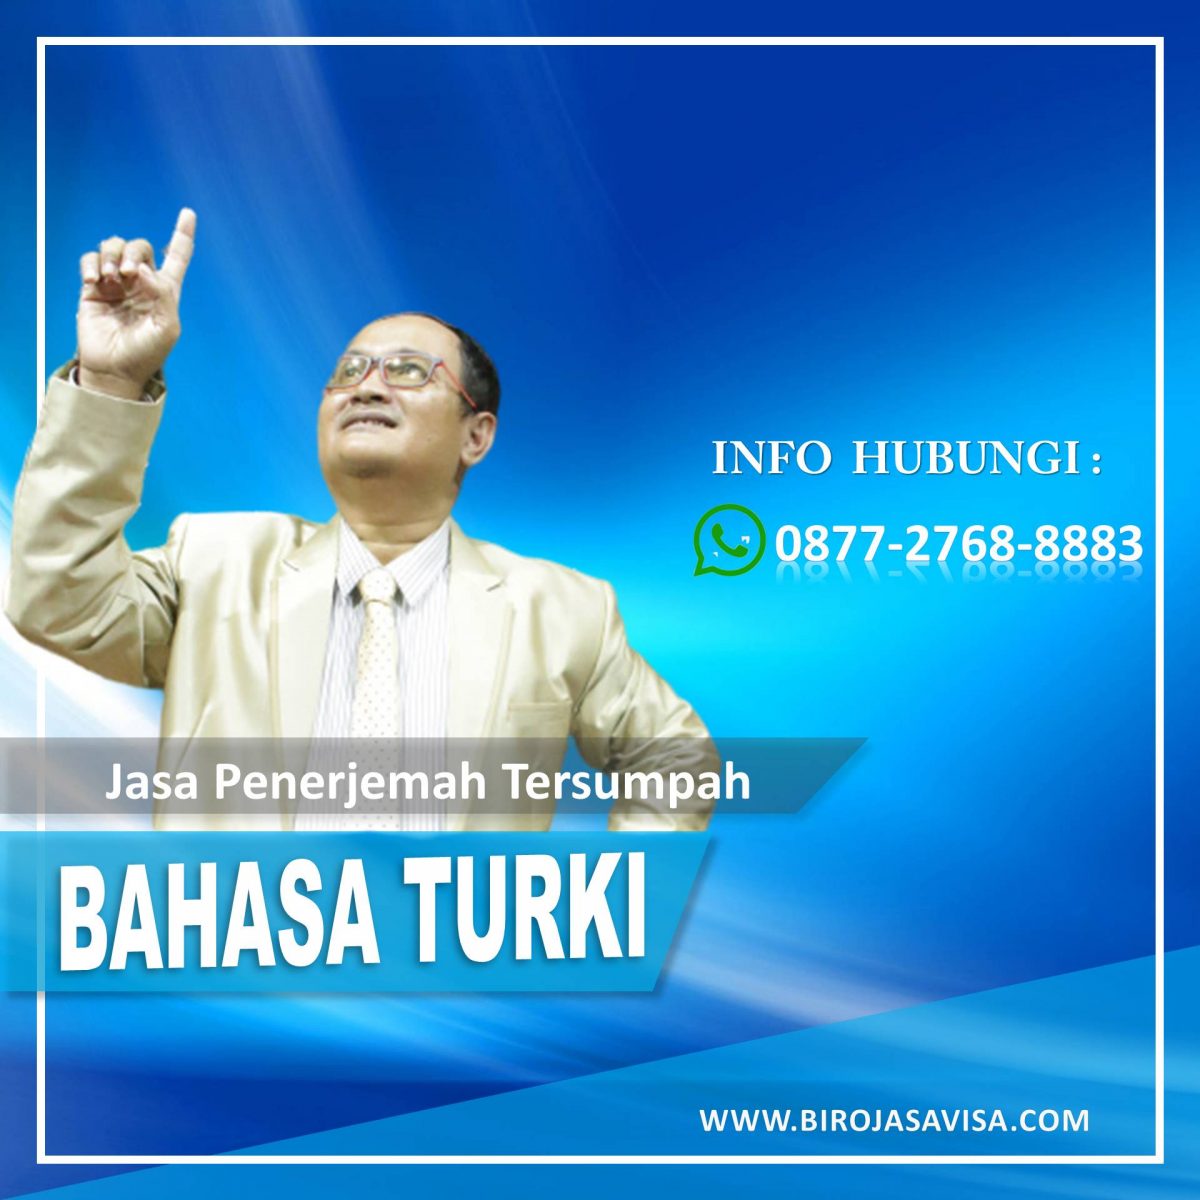 Info Jasa Penerjemah Tersumpah Bahasa Turki Profesional dan Terpercaya di Citereup Kabupaten Bogor, Hubungi 0877 2768 8883